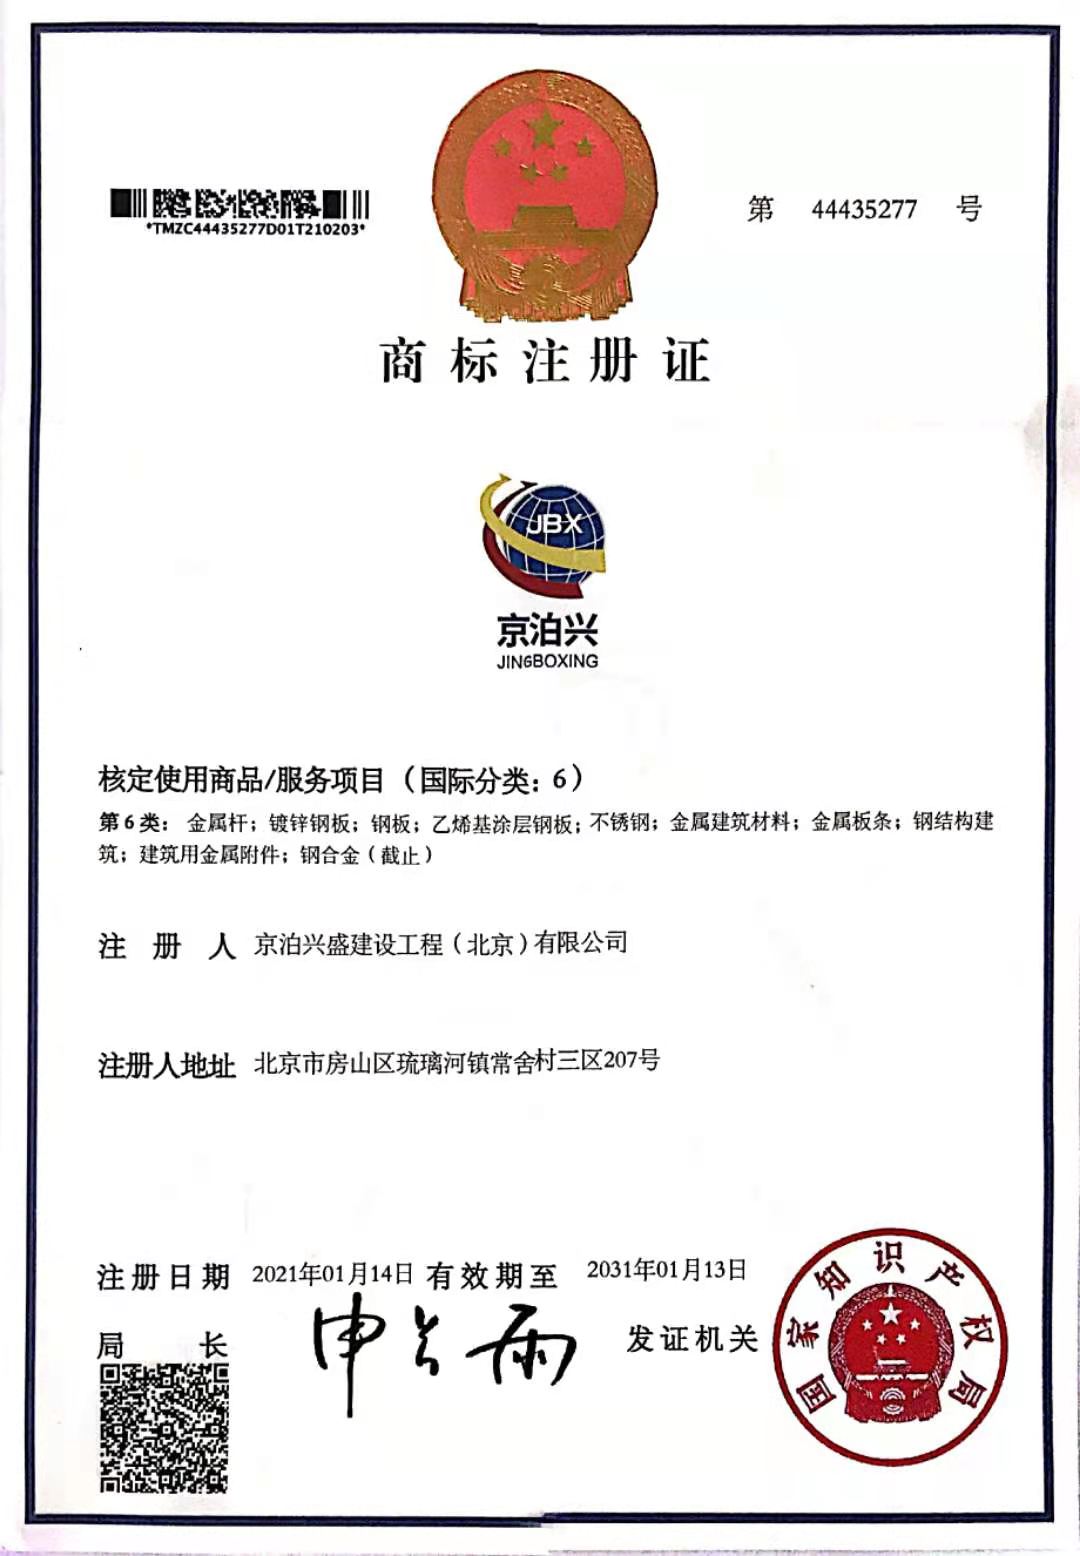 热烈祝贺我司“京泊兴”商标获得国家注册商标证书